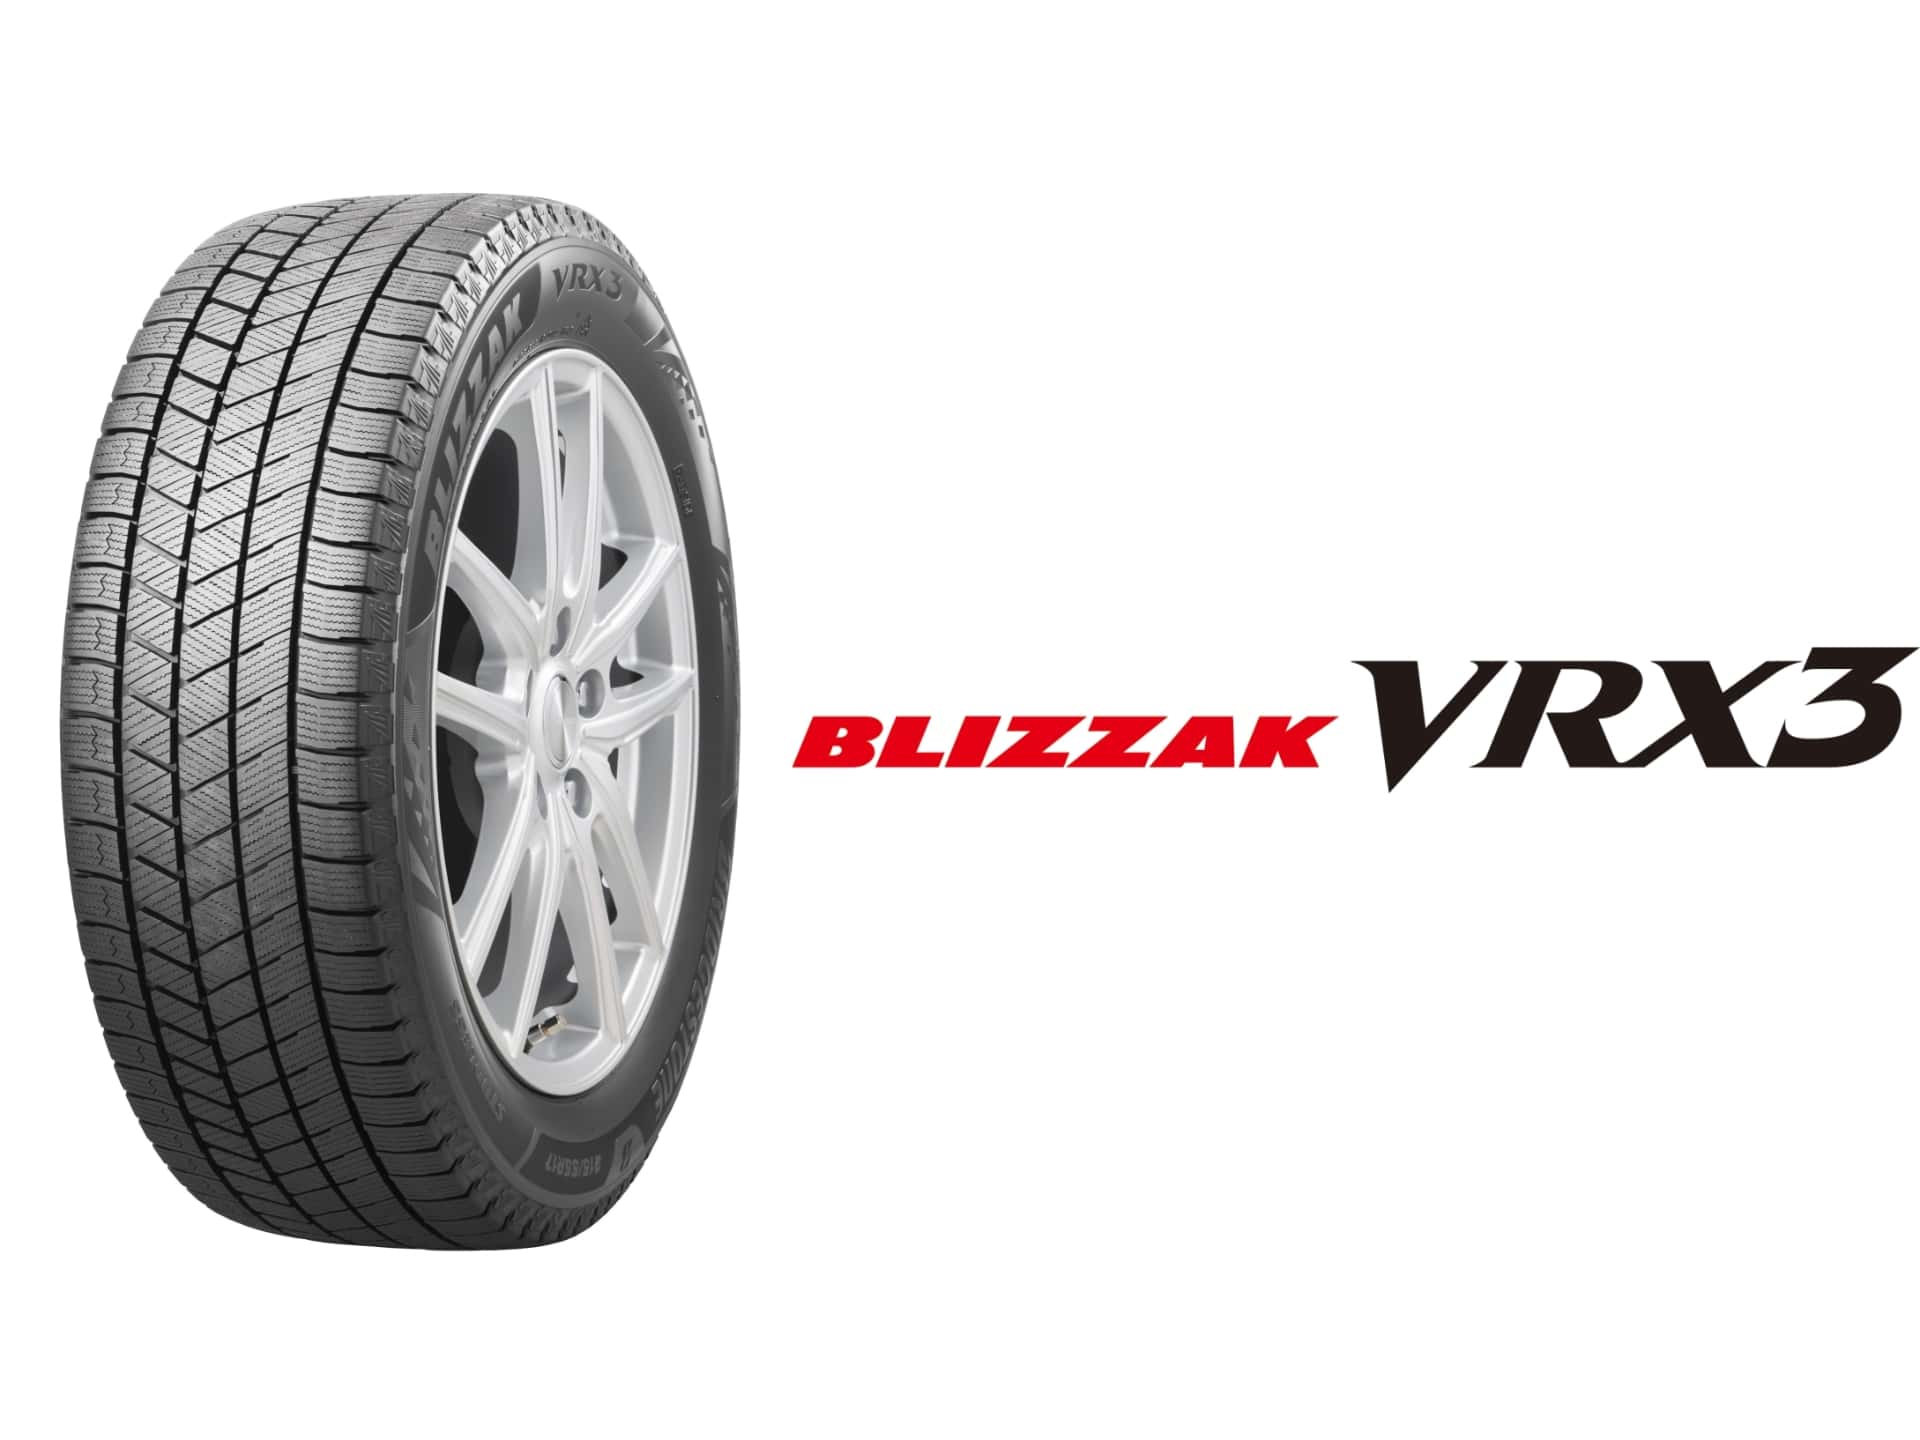 ブリヂストン スタッドレスタイヤ「ブリザック VRX3」新発売 氷上性能